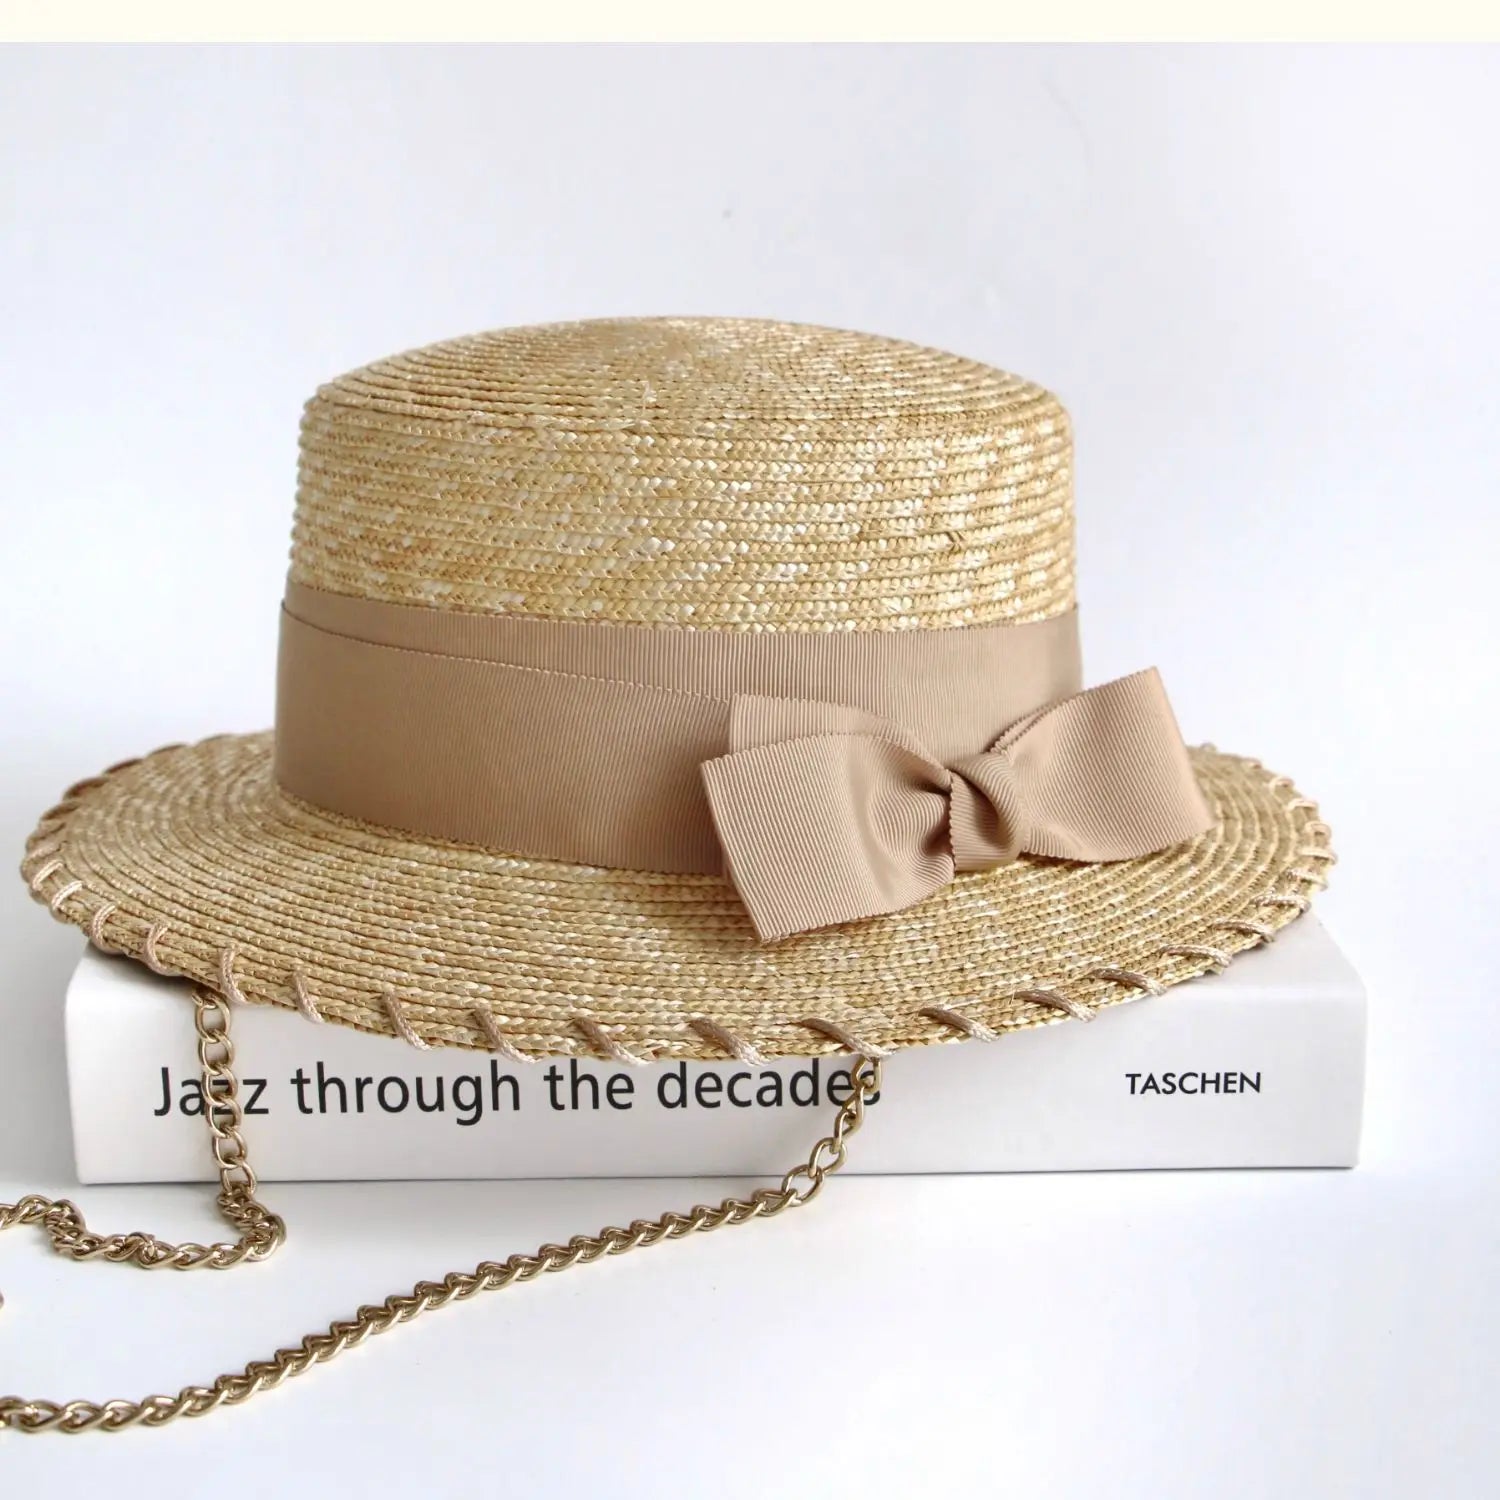 La boutique du chapeau Beige / ajustable Chapeau de paille avec nœud décoratif